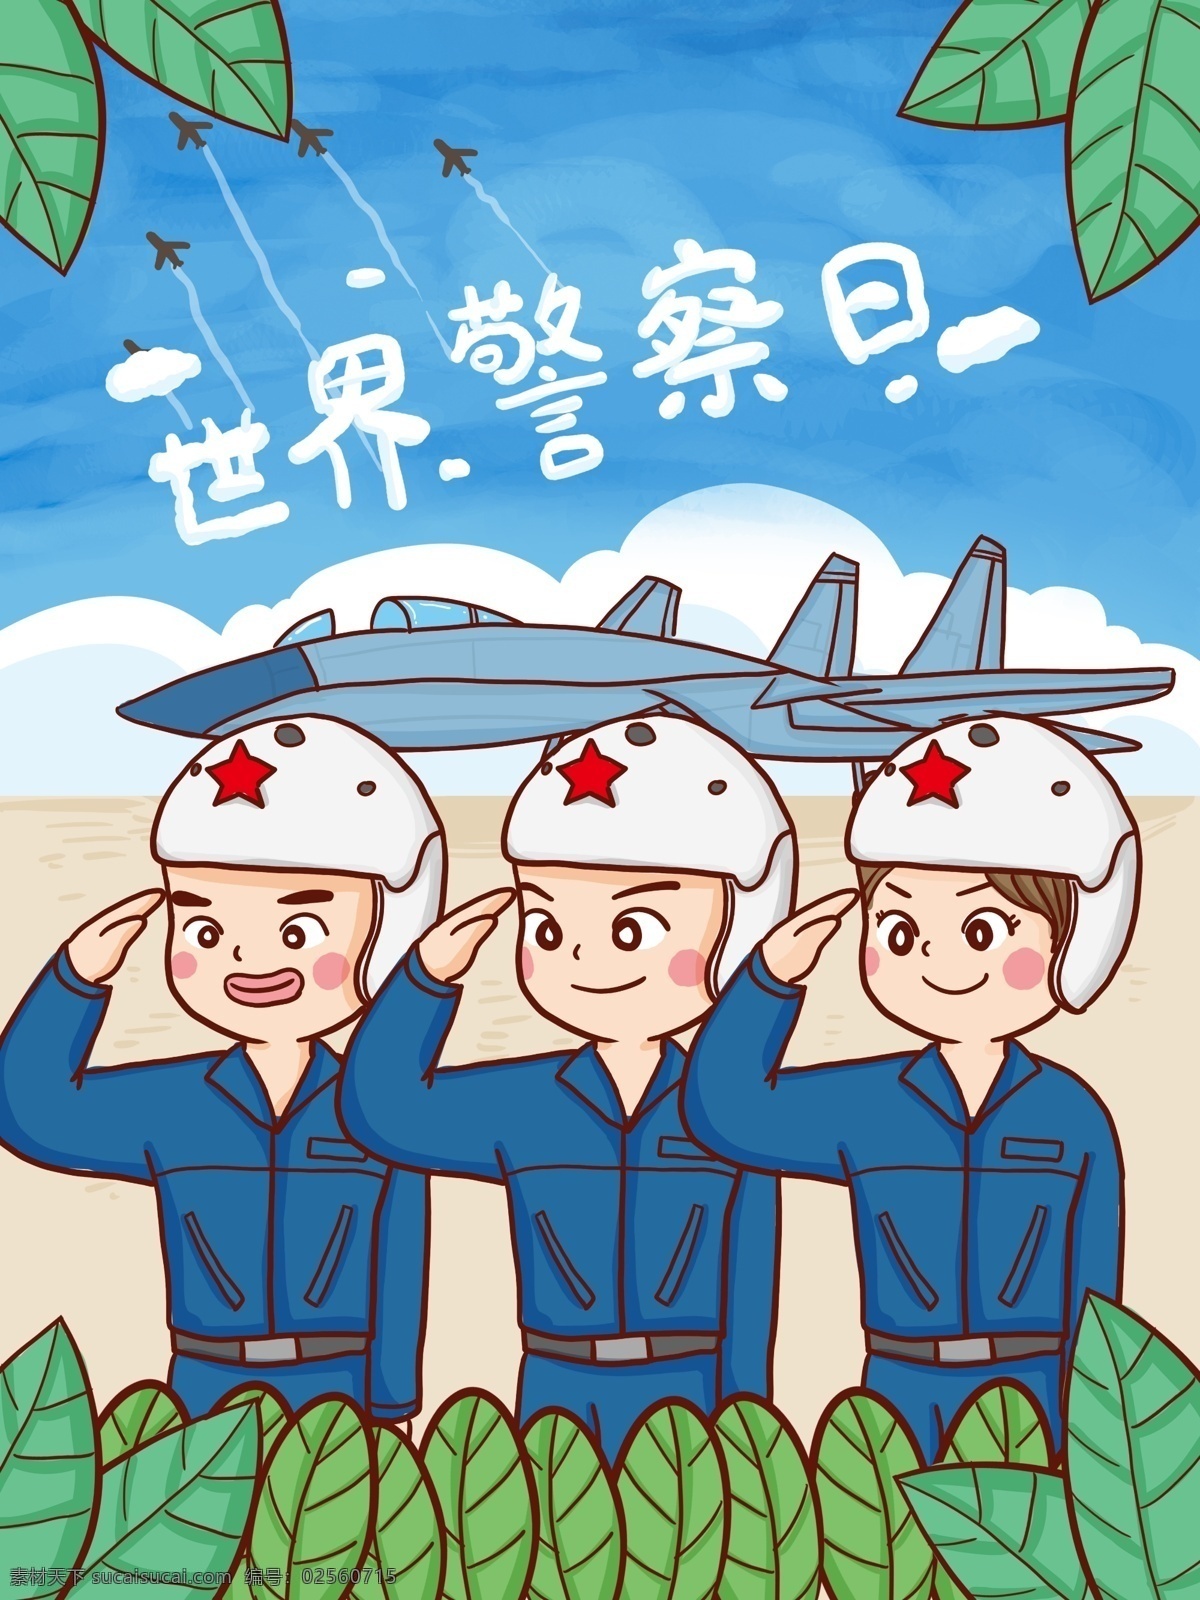 国际 警察 日 空军 保护 国家 手绘 原创 插画 国际警察日 国际警察 保家卫国 天空 战斗机